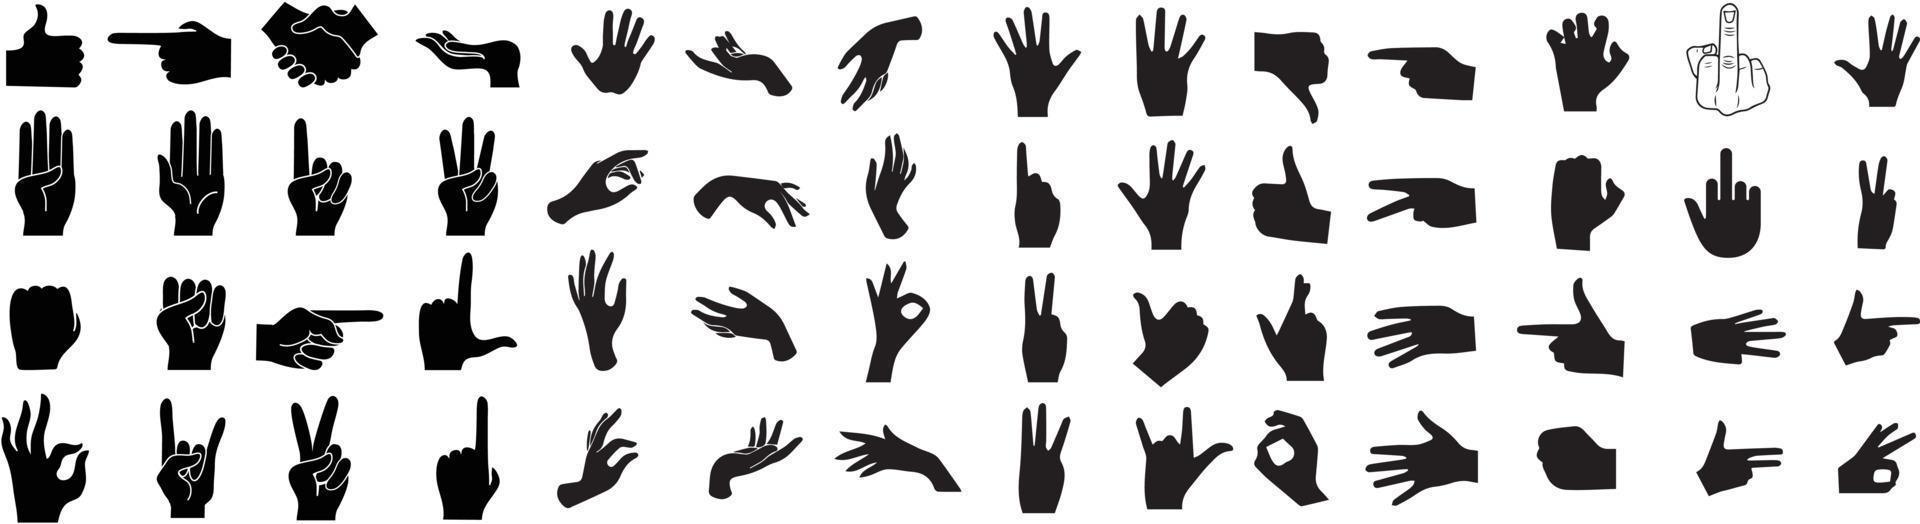 handen houding set. handen poseert. hand- Holding en richten gebaren, vingers gekruist, vuist, vrede en duim omhoog. hand- teken groot reeks vector